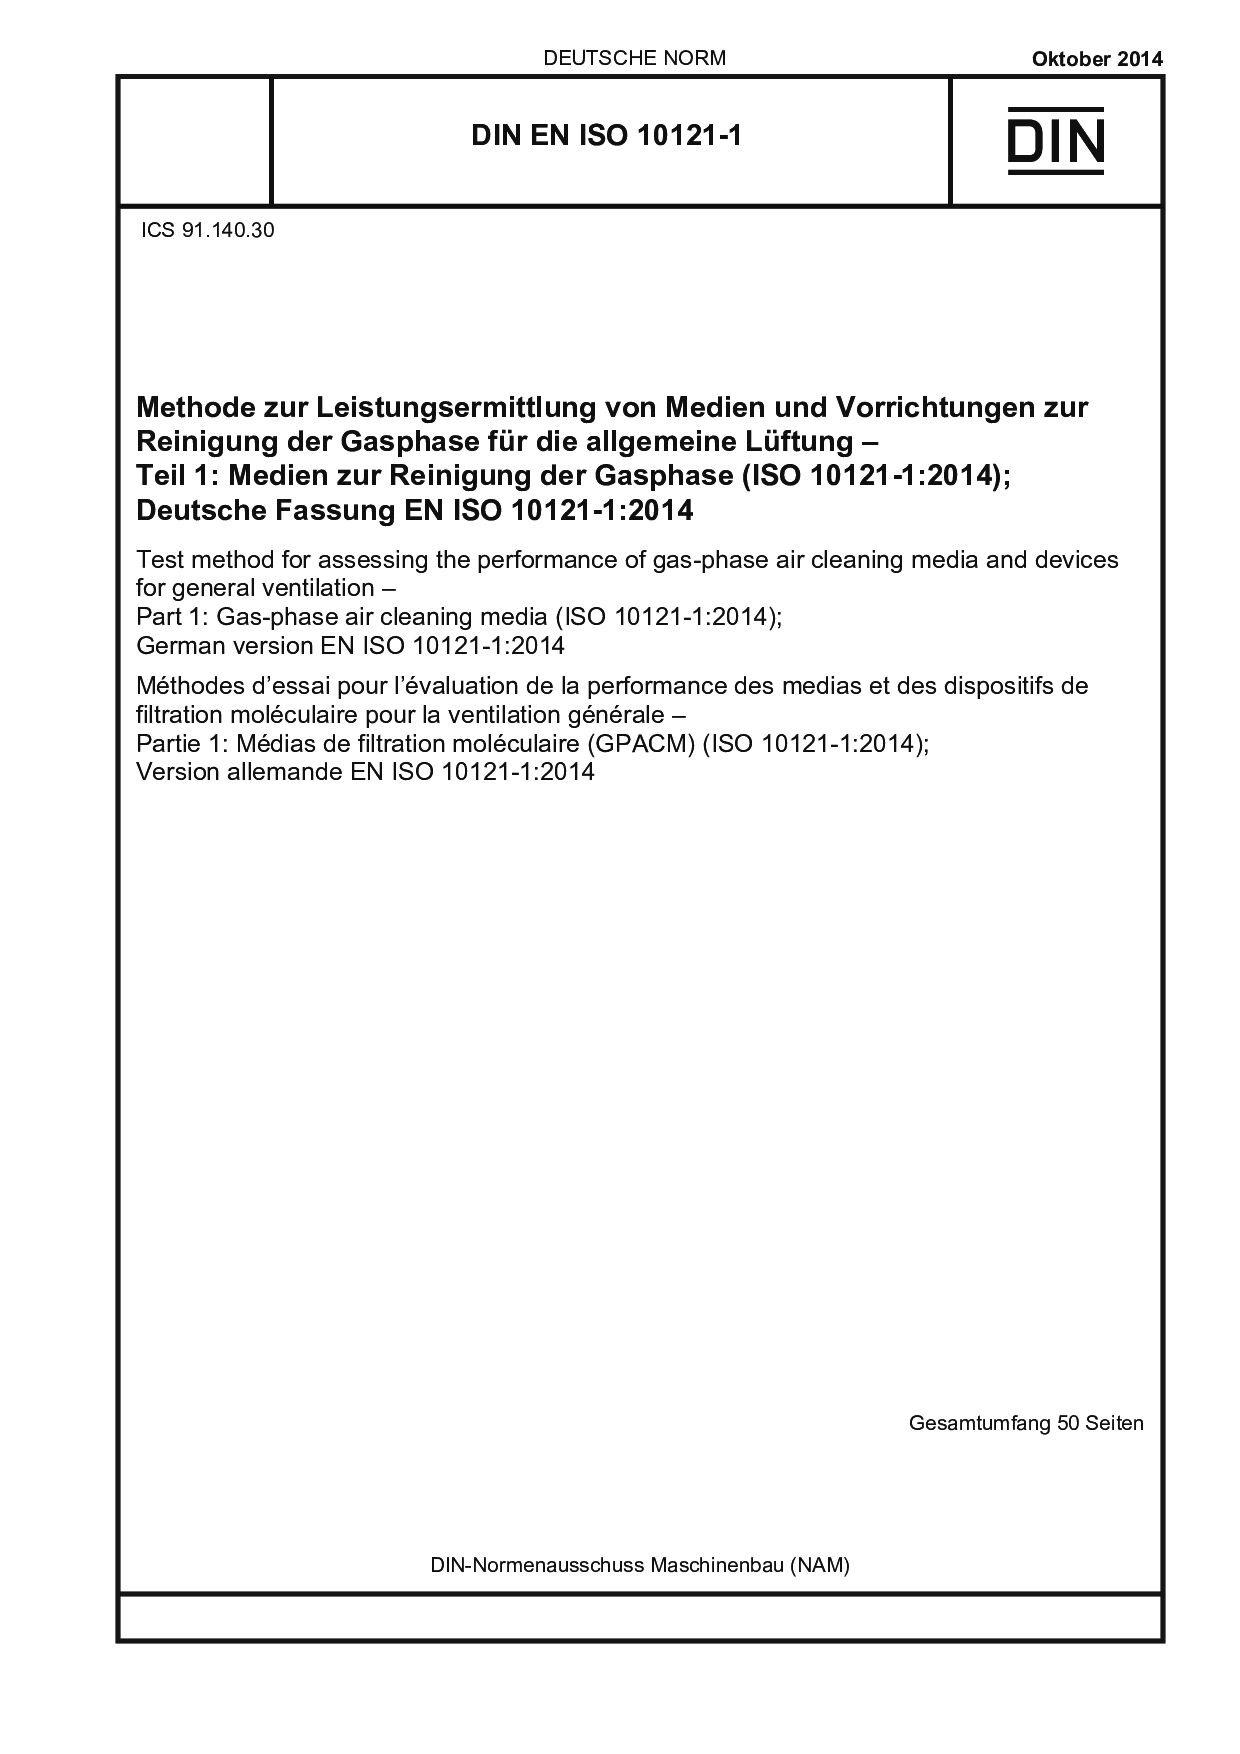 DIN EN ISO 10121-1:2014封面图